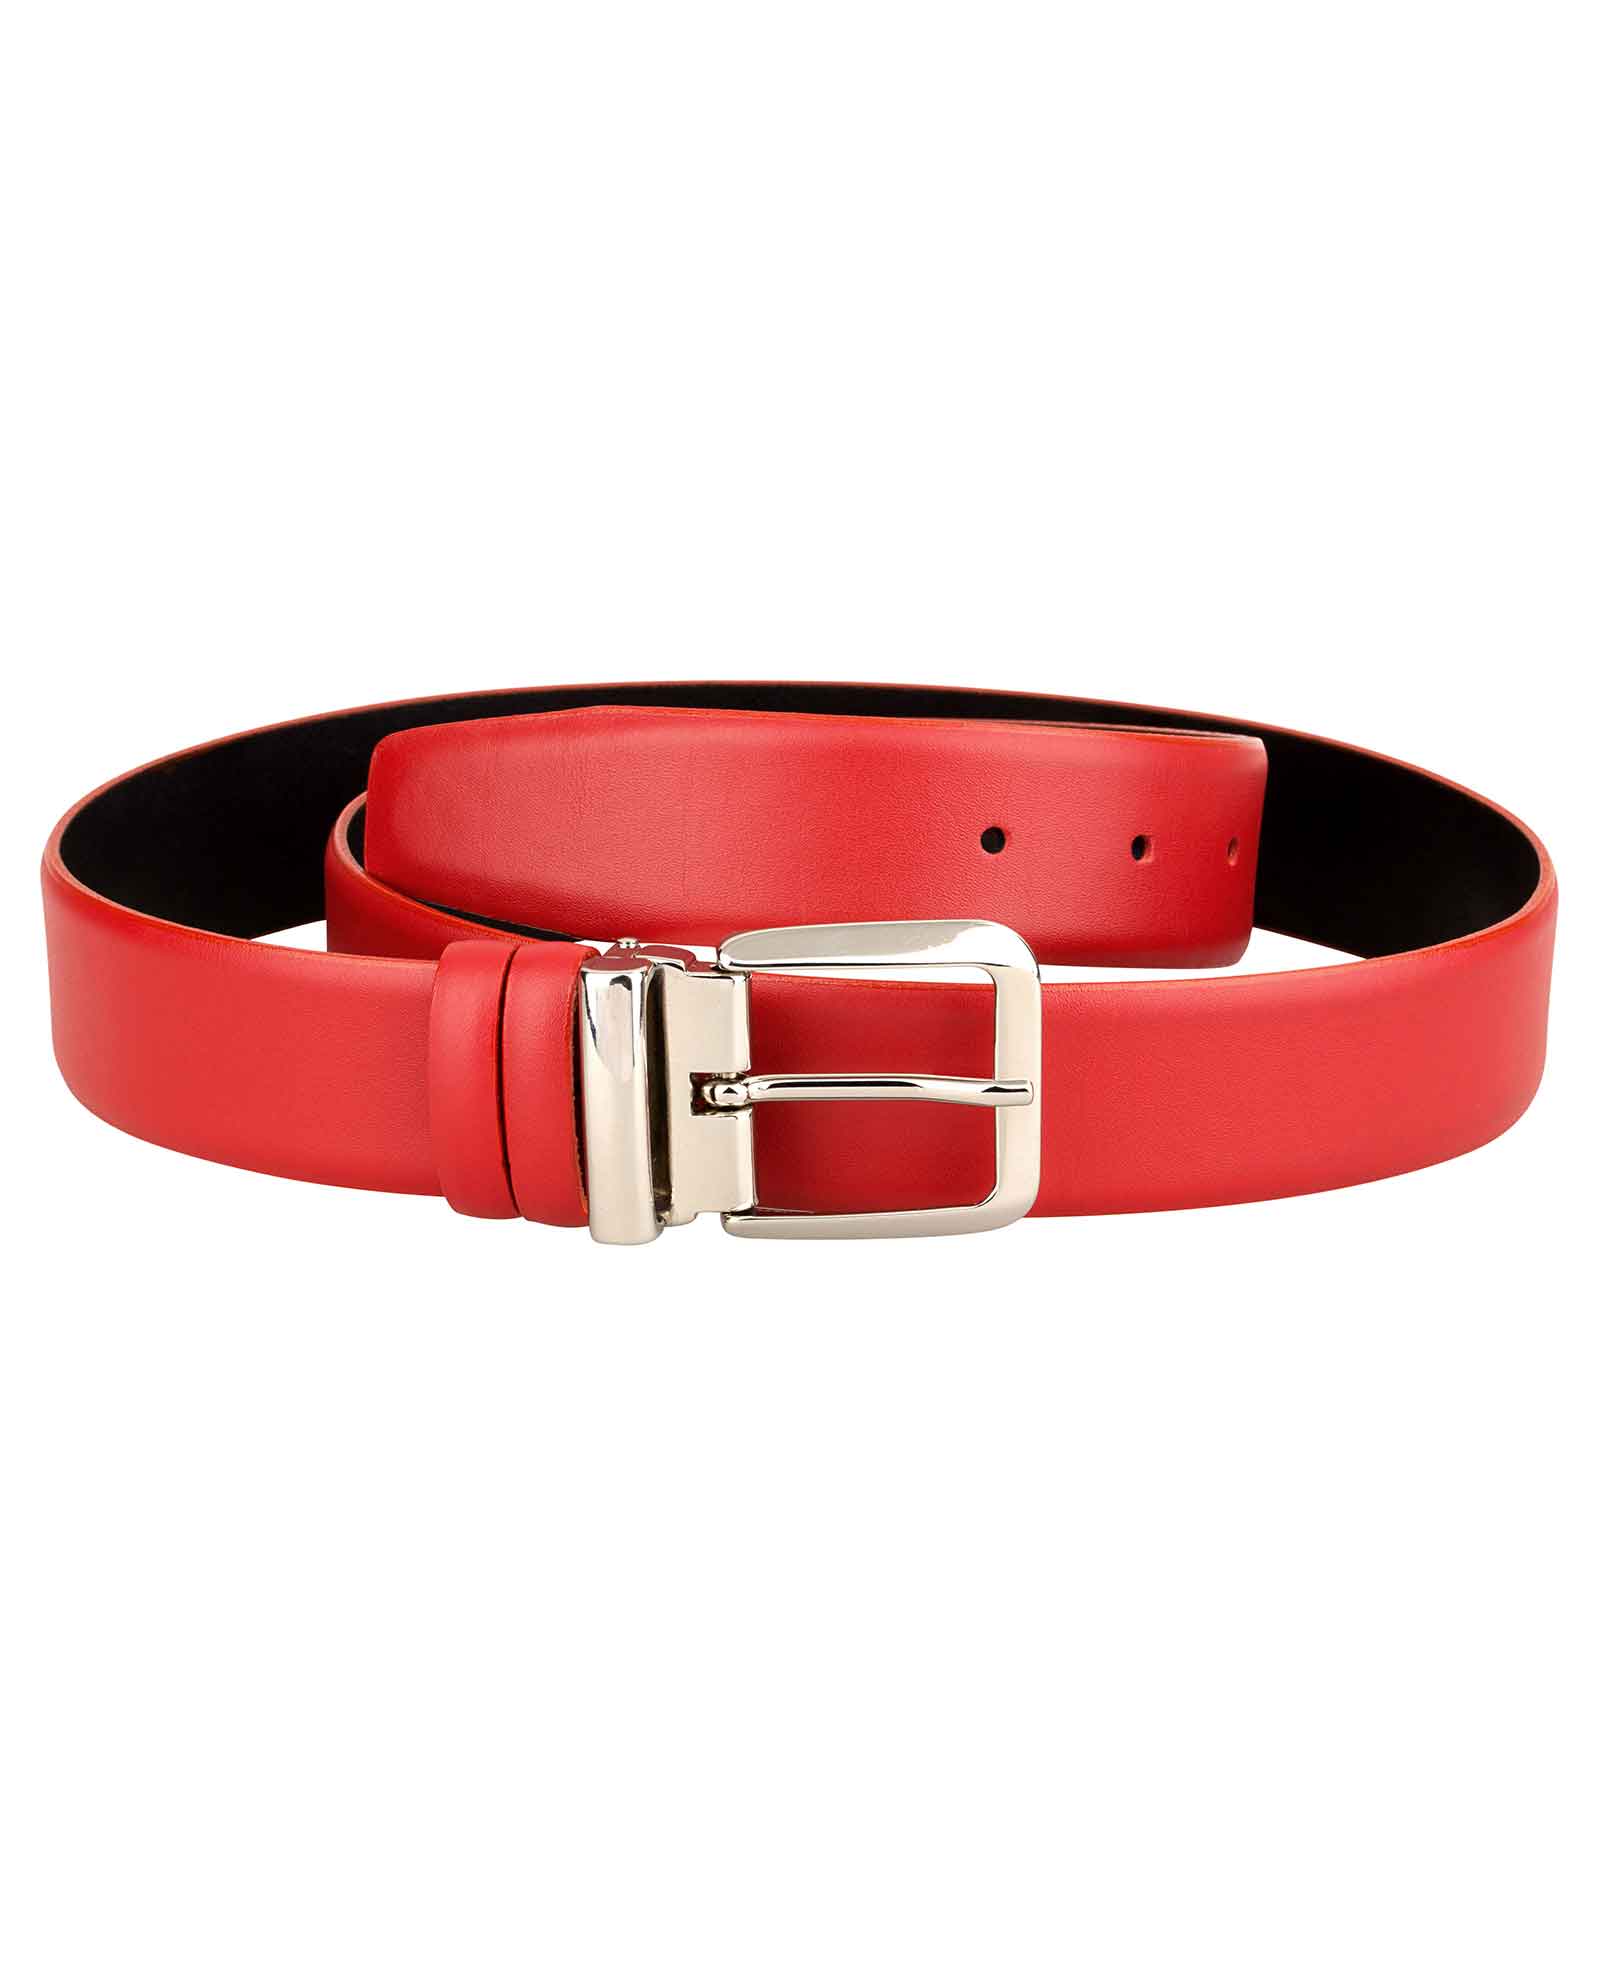 Buy Women's Red Belt Italian buckle - Capo Pelle - Free Shipping